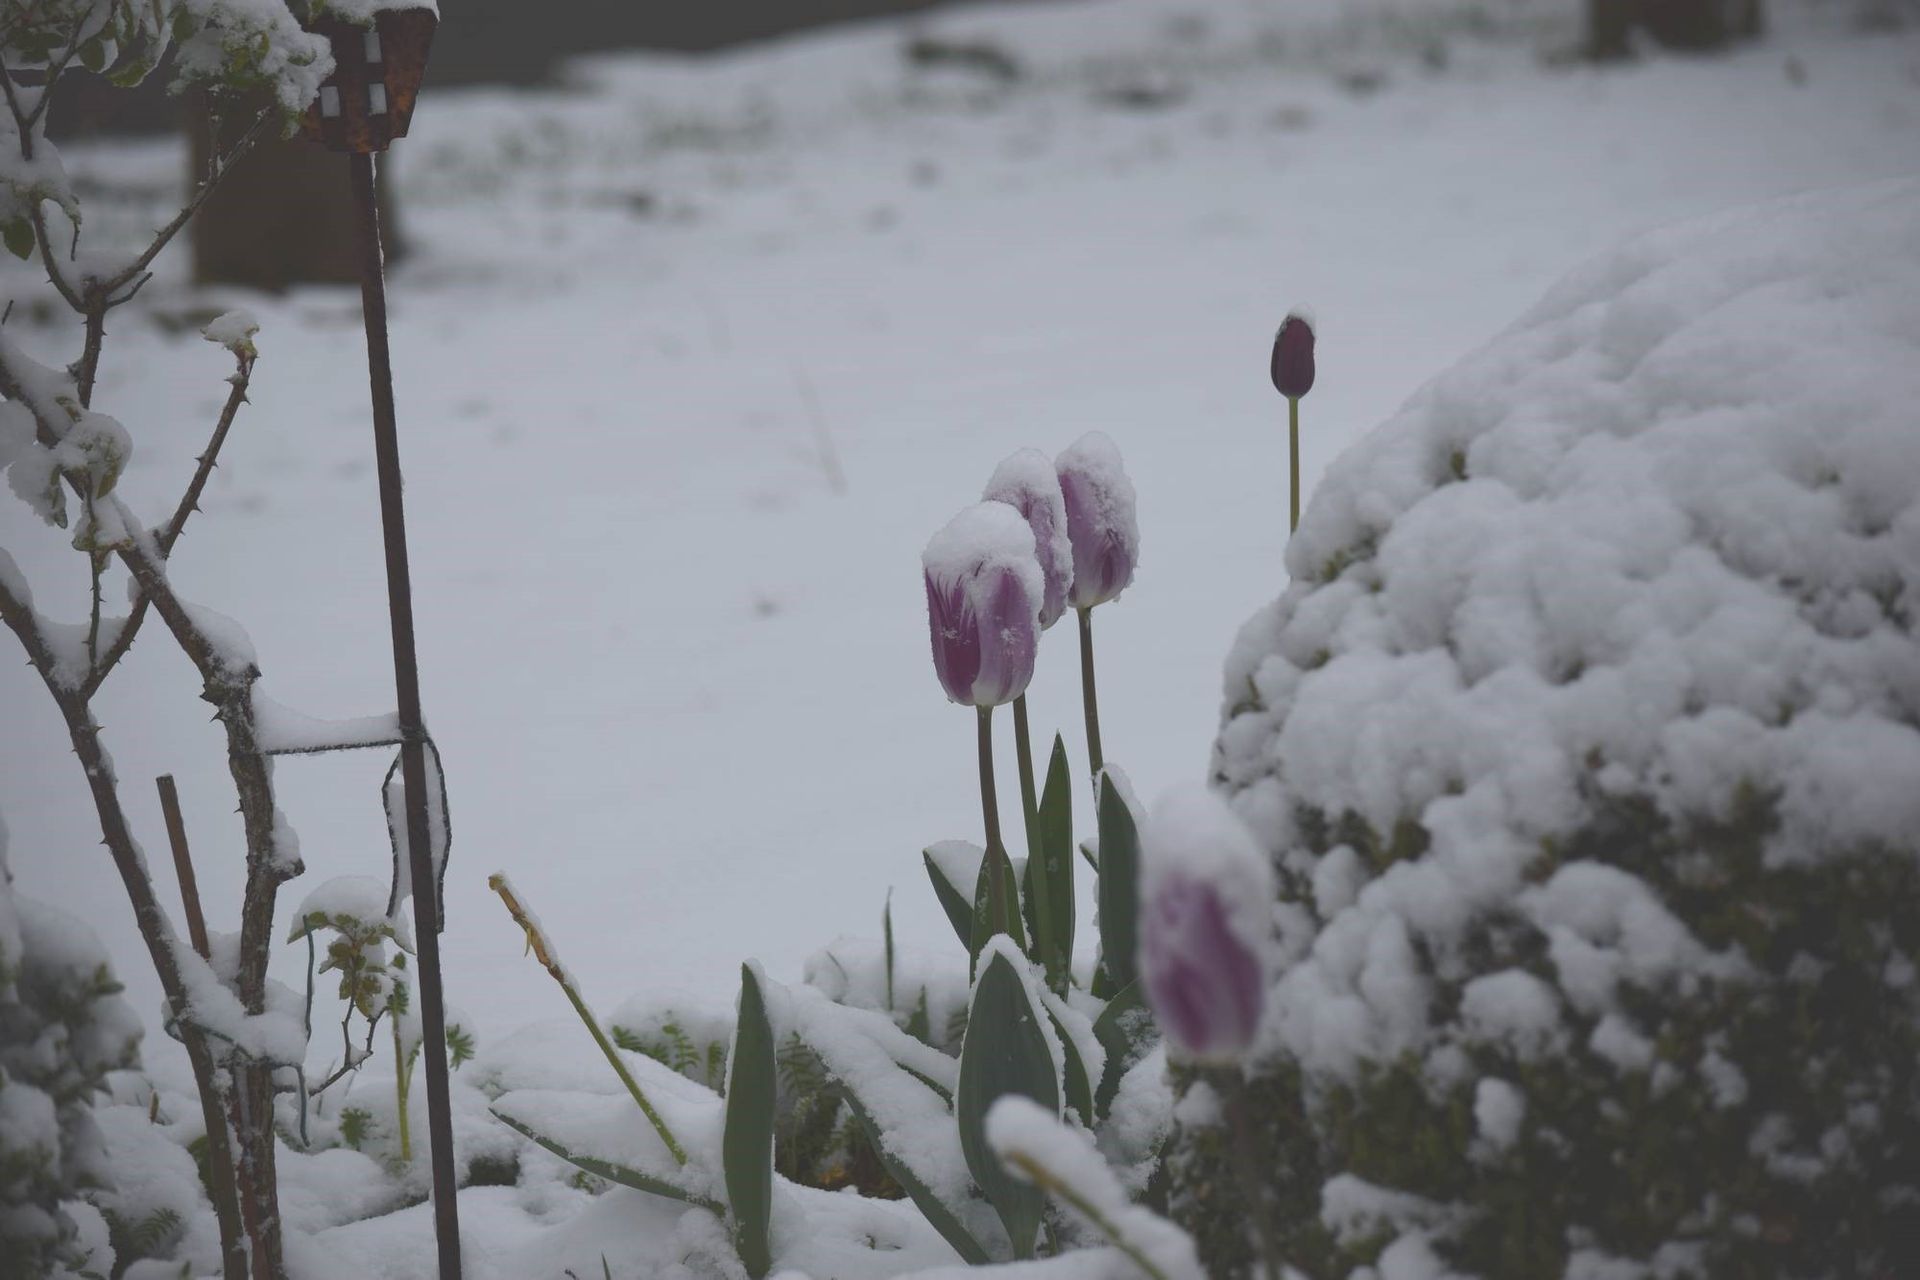 Dans les jardins, les fleurs recouvertes de neige donnent un spectacle original